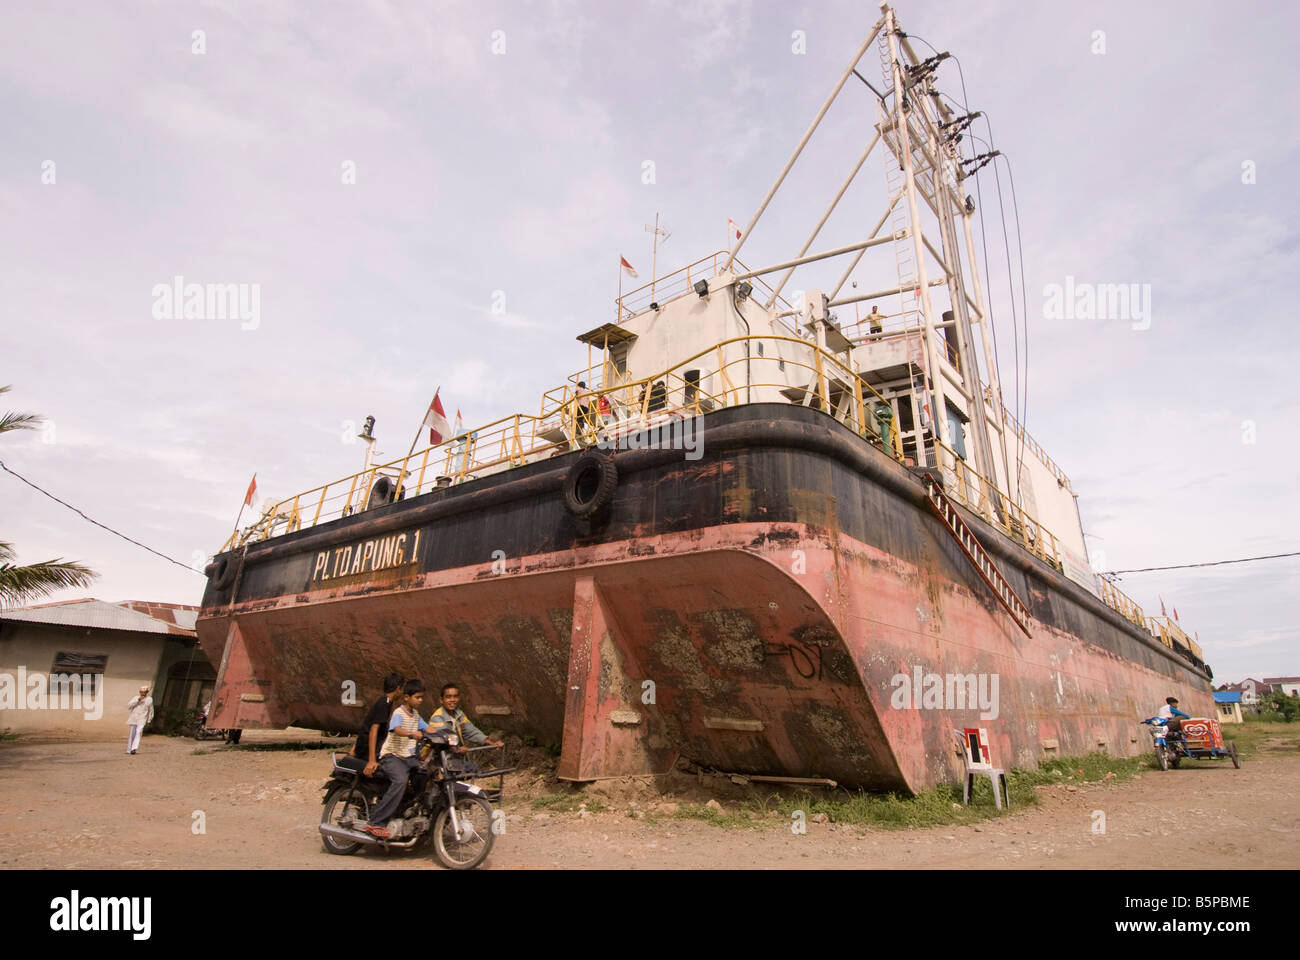 Schwimmende elektrischen Generator Schiff - verursacht durch Tsunami befindet sich in Kampung Bunge Blangcut, Jayabaru, Banda Aceh, Sumatra, Indonesien Stockfoto